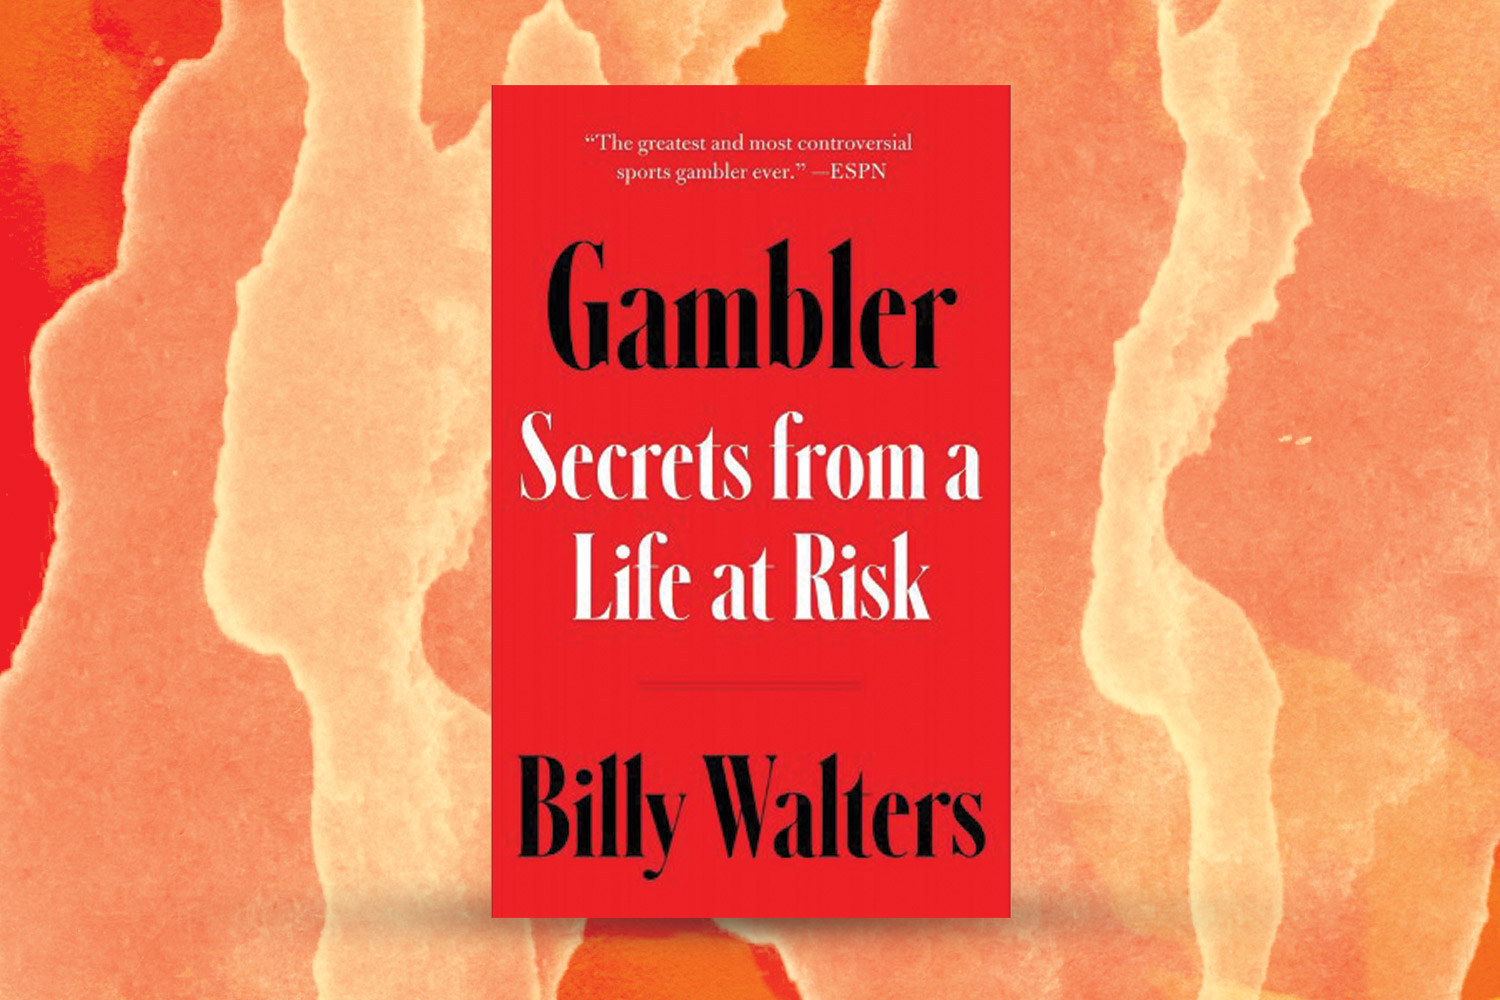 "Gambler" cover